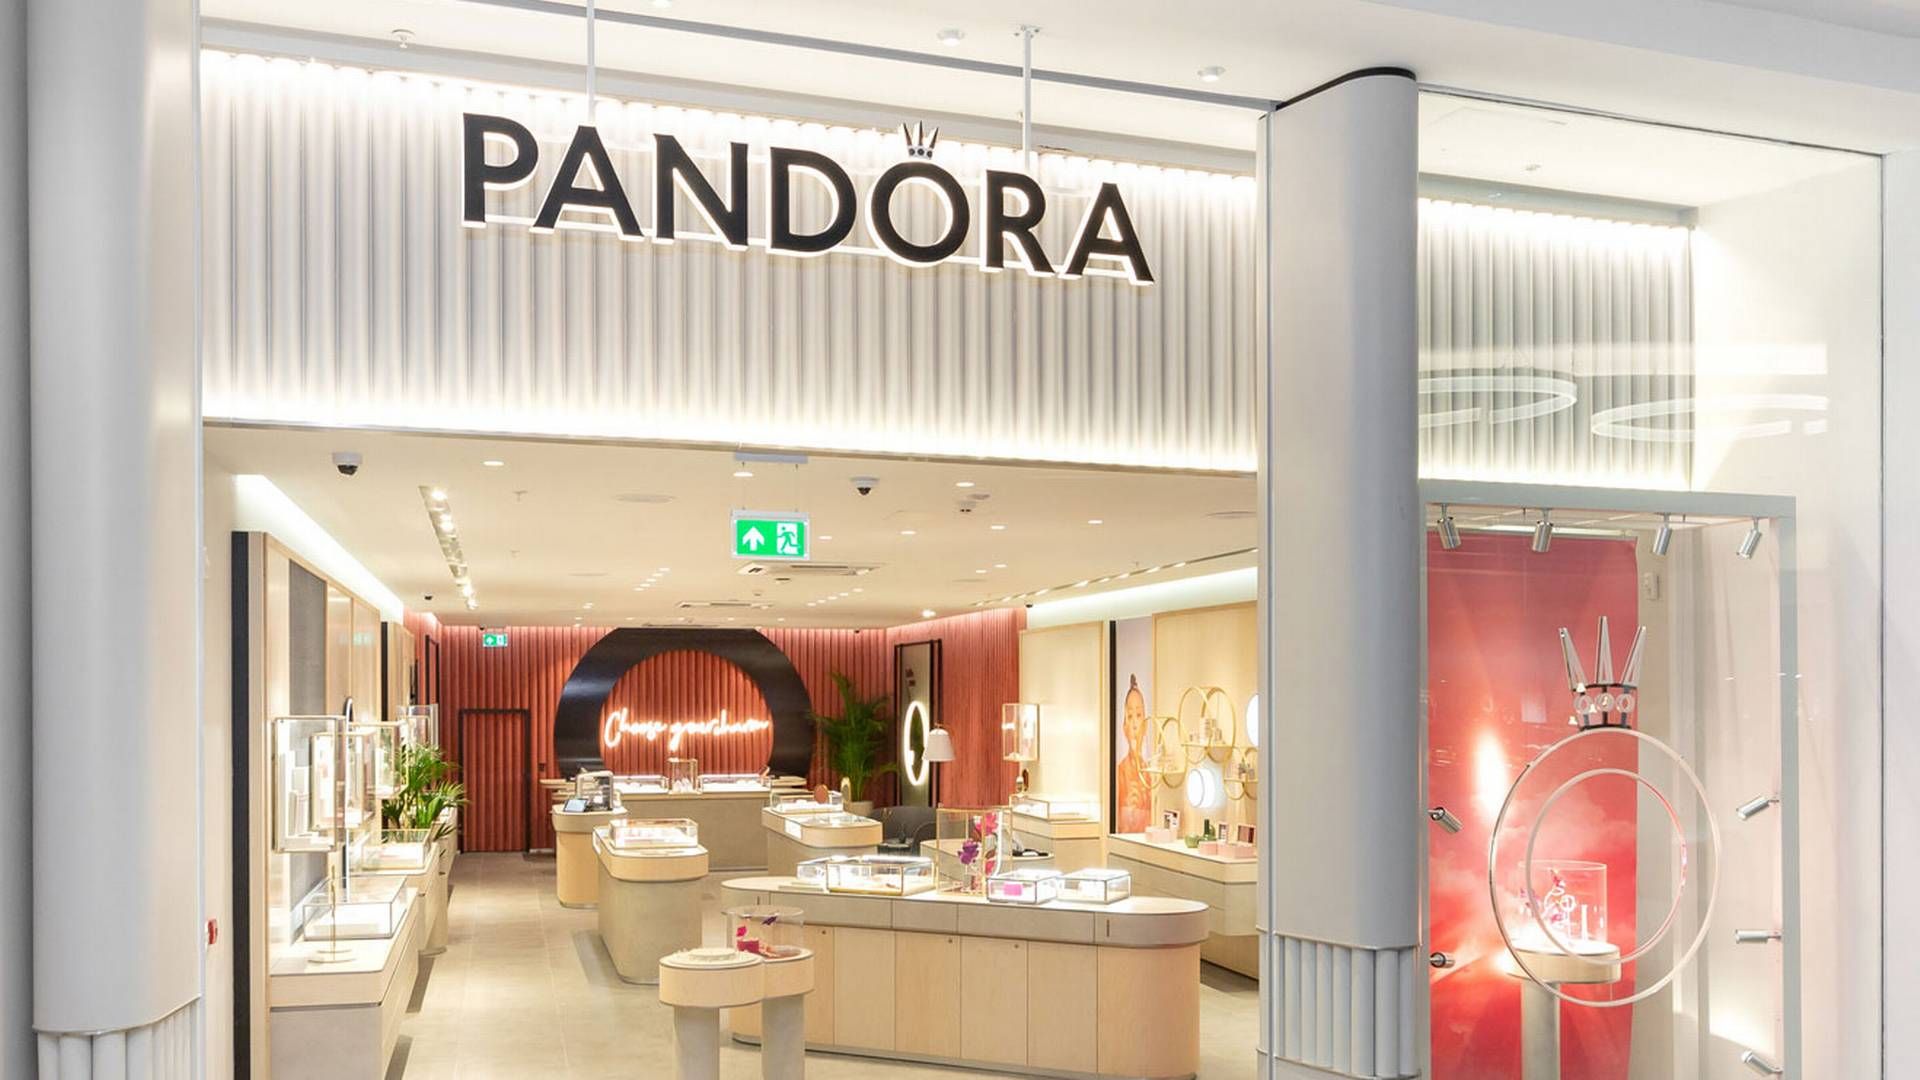 Pandora har under topchef Alexander Lacik gennemgået en turnaround. | Foto: Pr/pandora